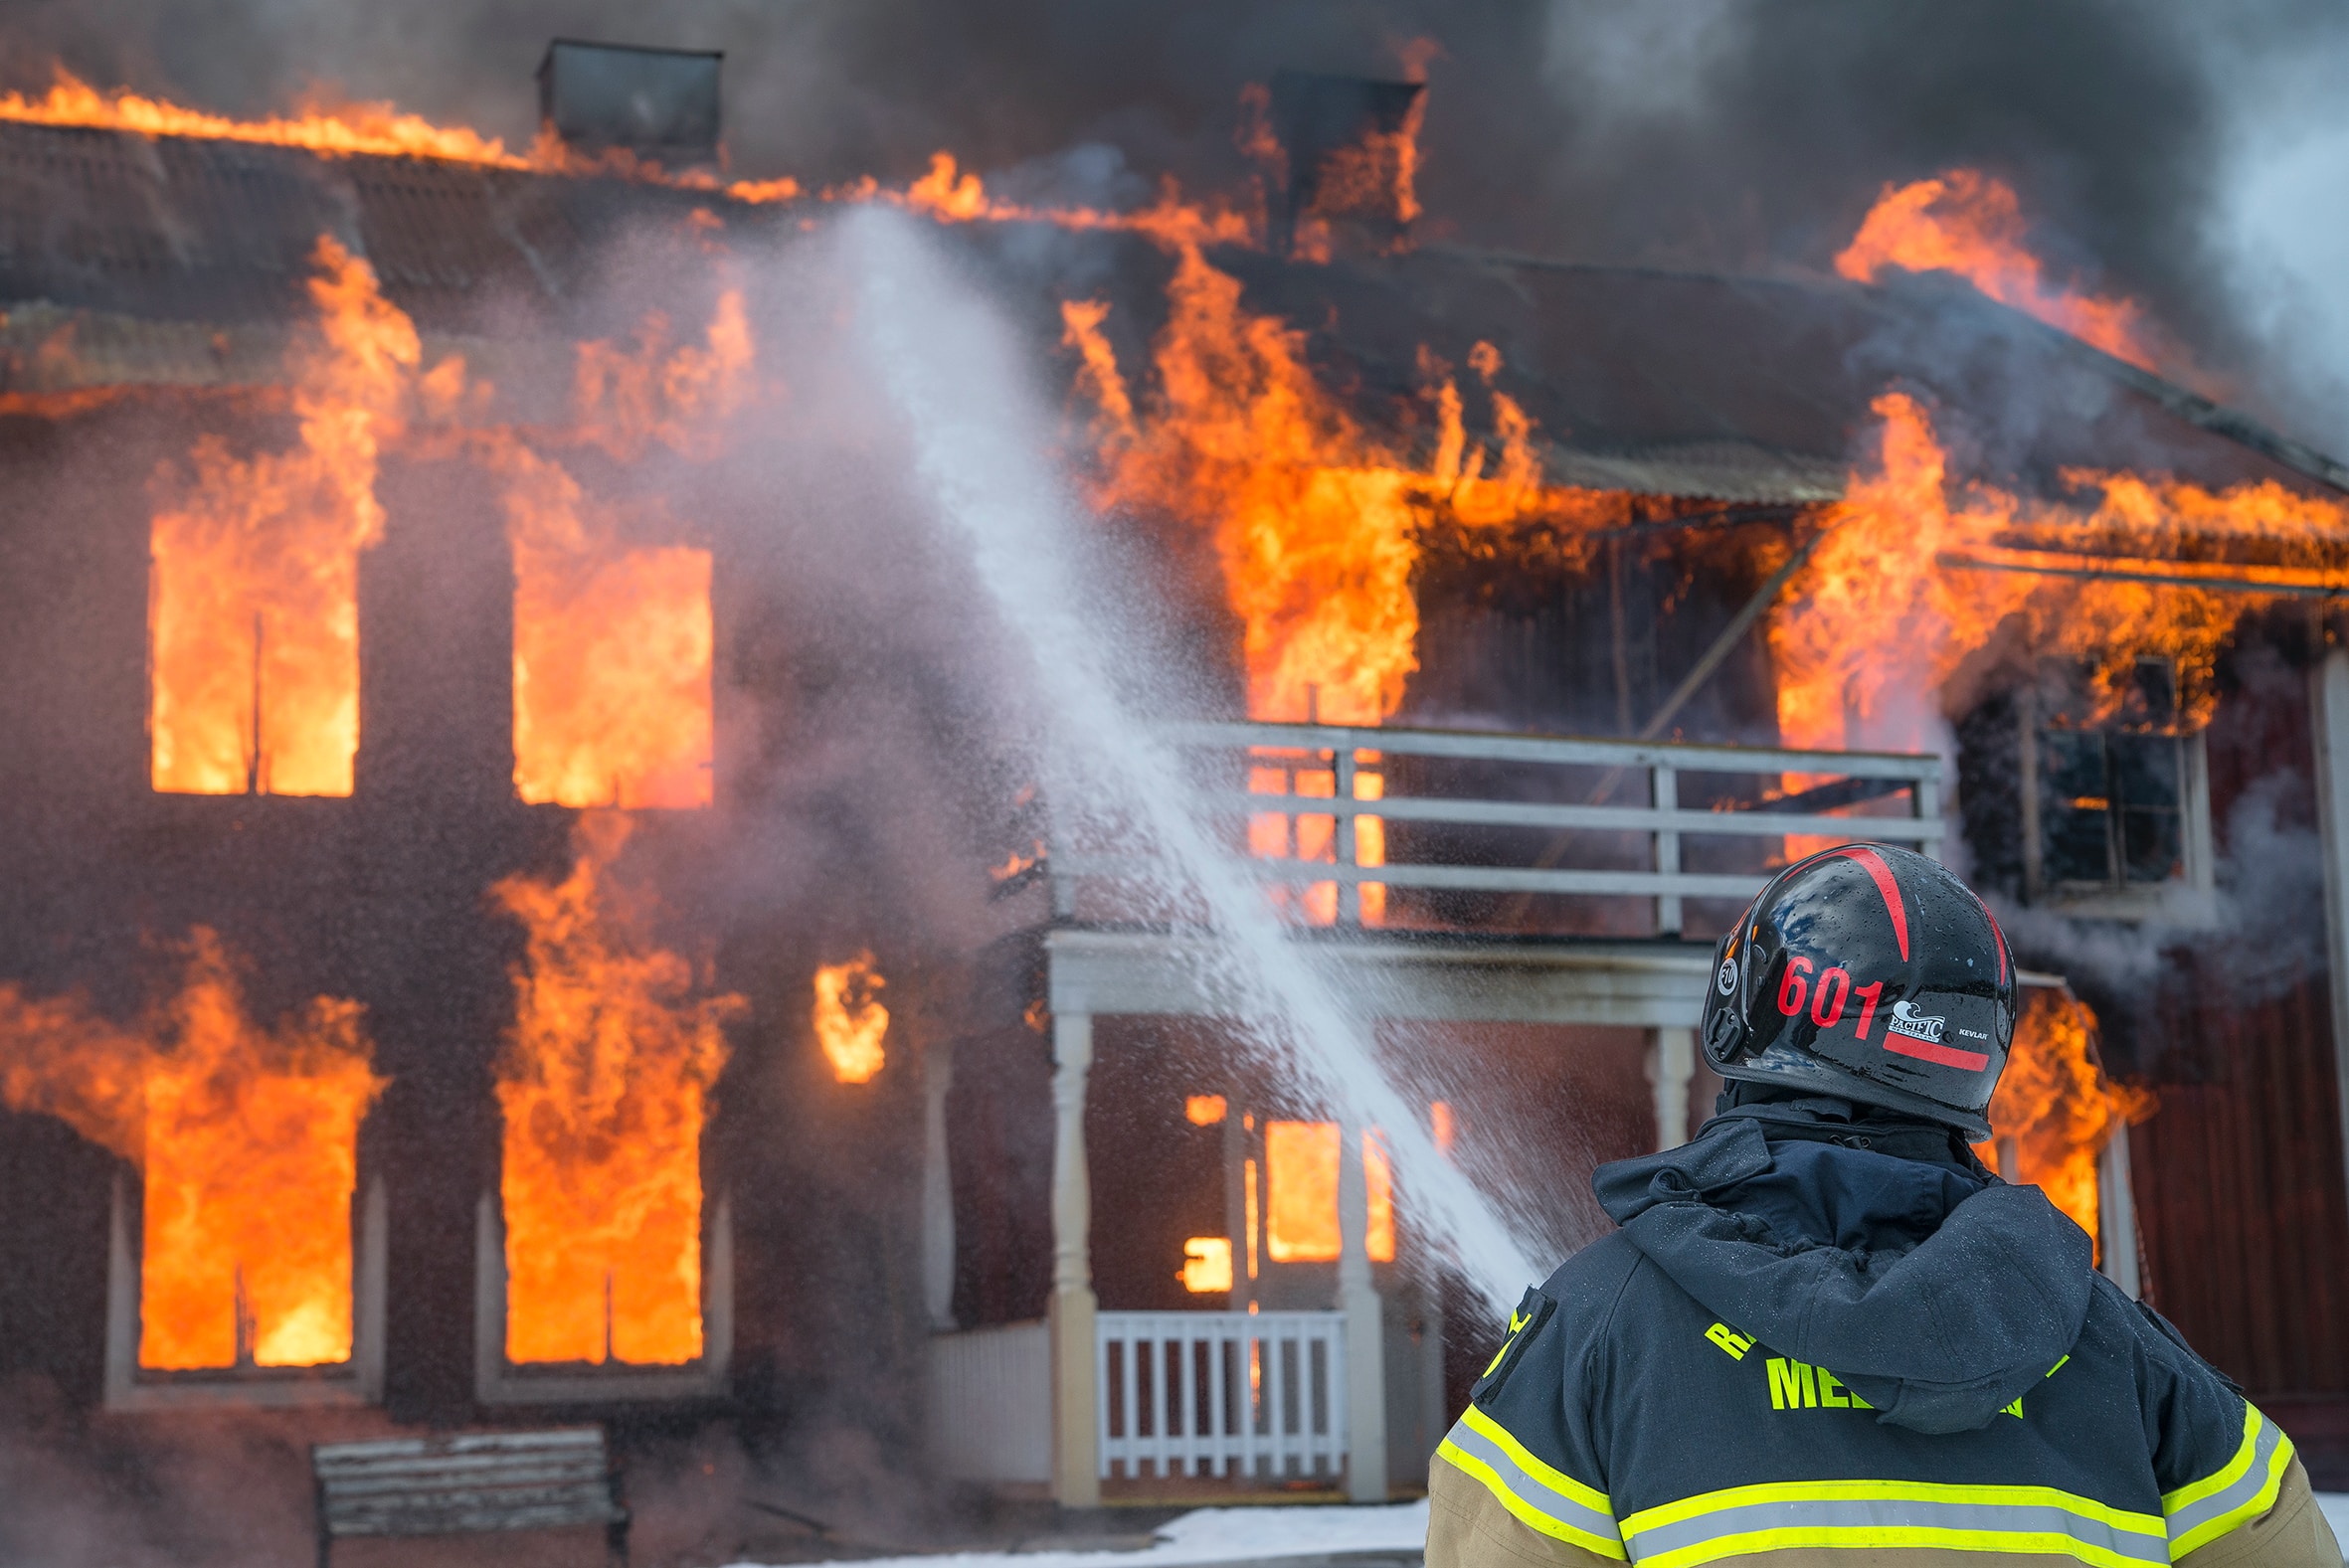  
Най-малко 9 души загинаха при пожар във ваканционна къща във